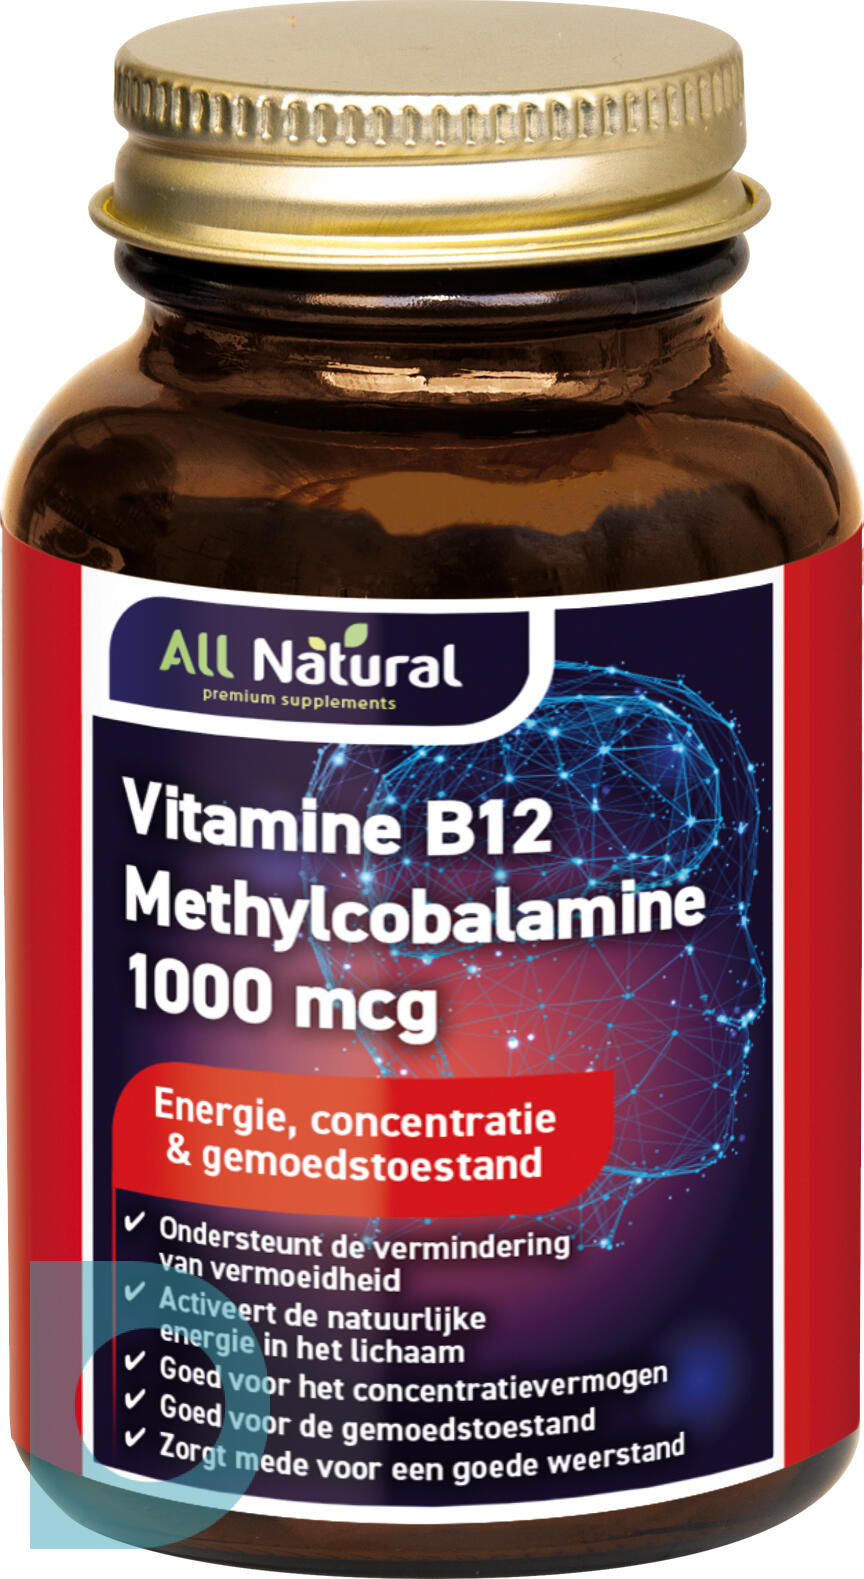 Geheim Vervelend Overvloedig All Natural Vitamine B12 Methylcobalamine 1000mcg Kauwtabletten kopen bij  De Onl